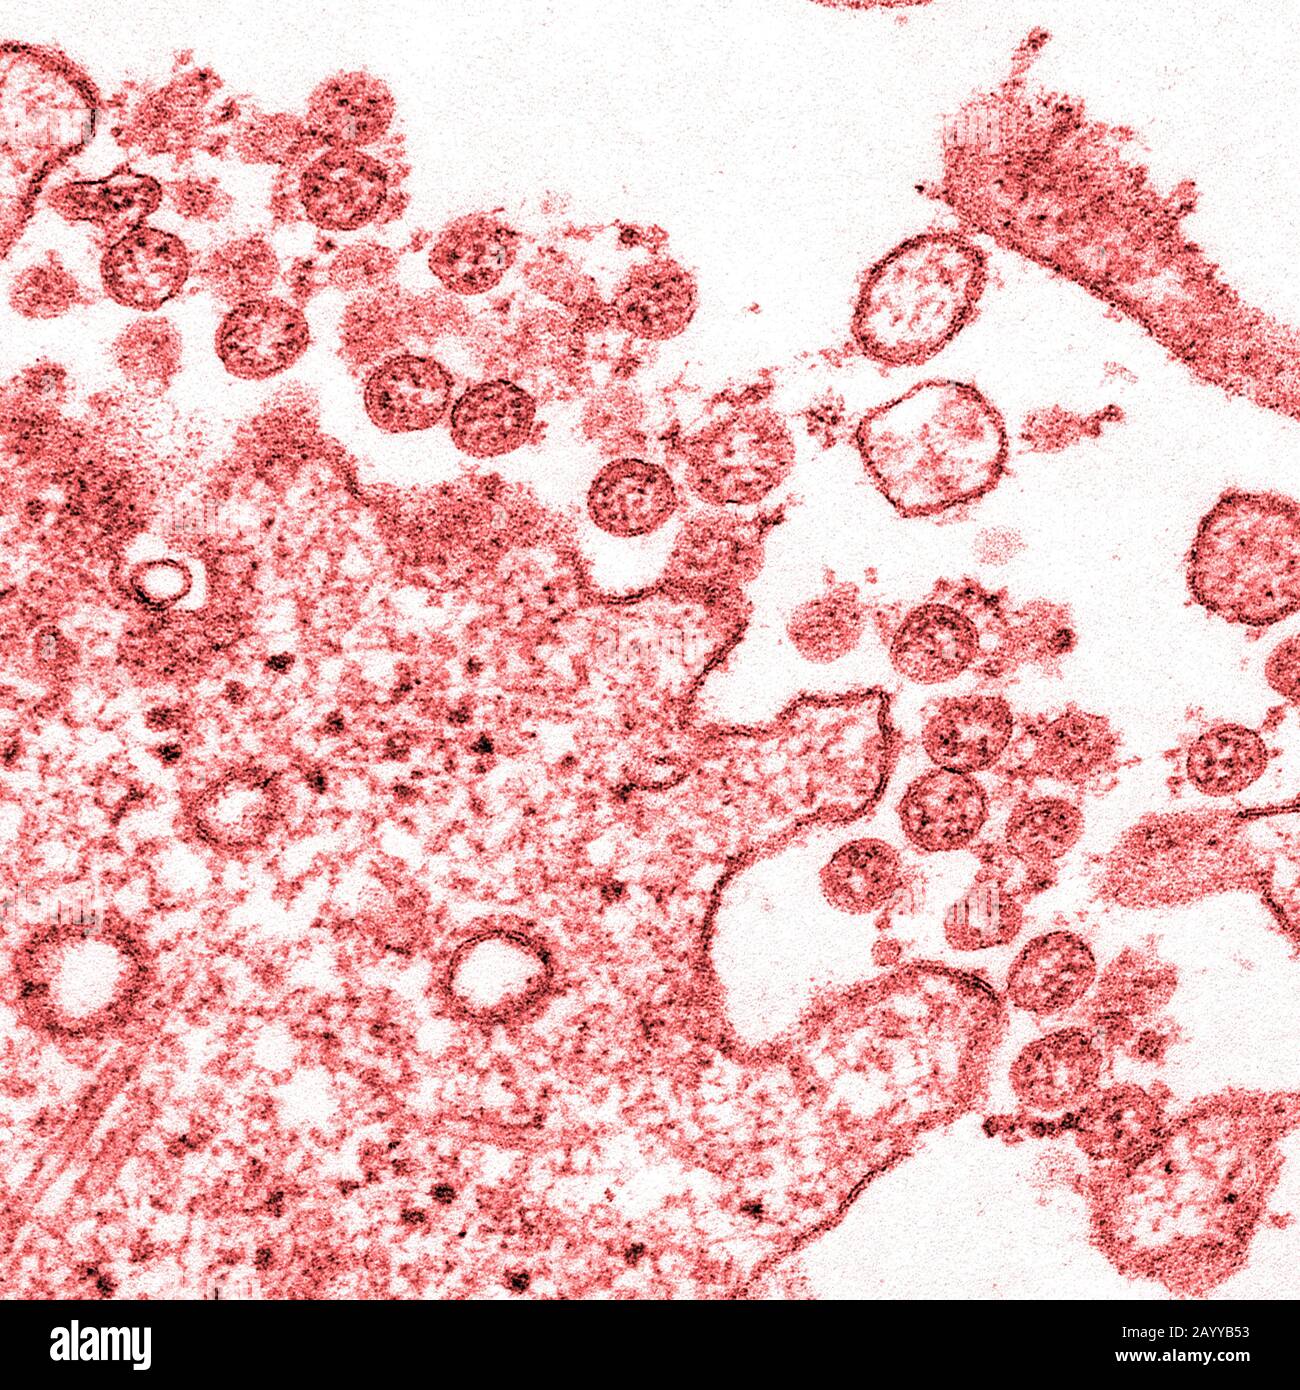 Imagen microscópica de electrones de transmisión de un aislamiento del primer caso de Estados Unidos de COVID-19, anteriormente conocido como 2019-nCoV. Las partículas virales extracelulares esféricas contienen secciones transversales a través del genoma viral, vistas como puntos rojos. Foto de stock